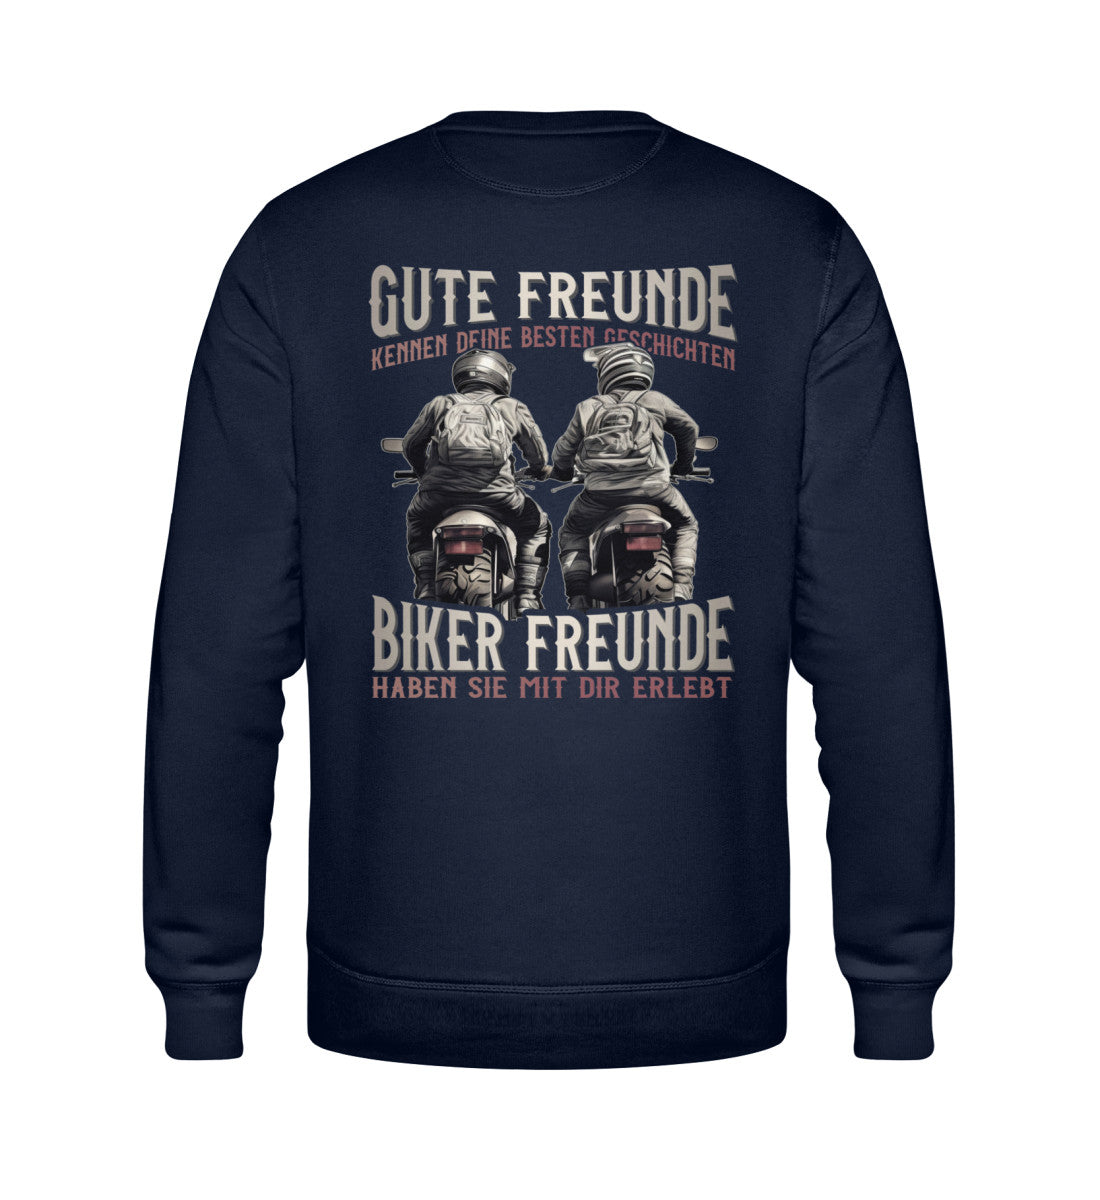 Ein Sweatshirt für Motorradfahrer von Wingbikers mit dem Aufdruck, Gute Freunde kenne deine Geschichten - Biker haben sie mit dir erlebt, in navy blau.